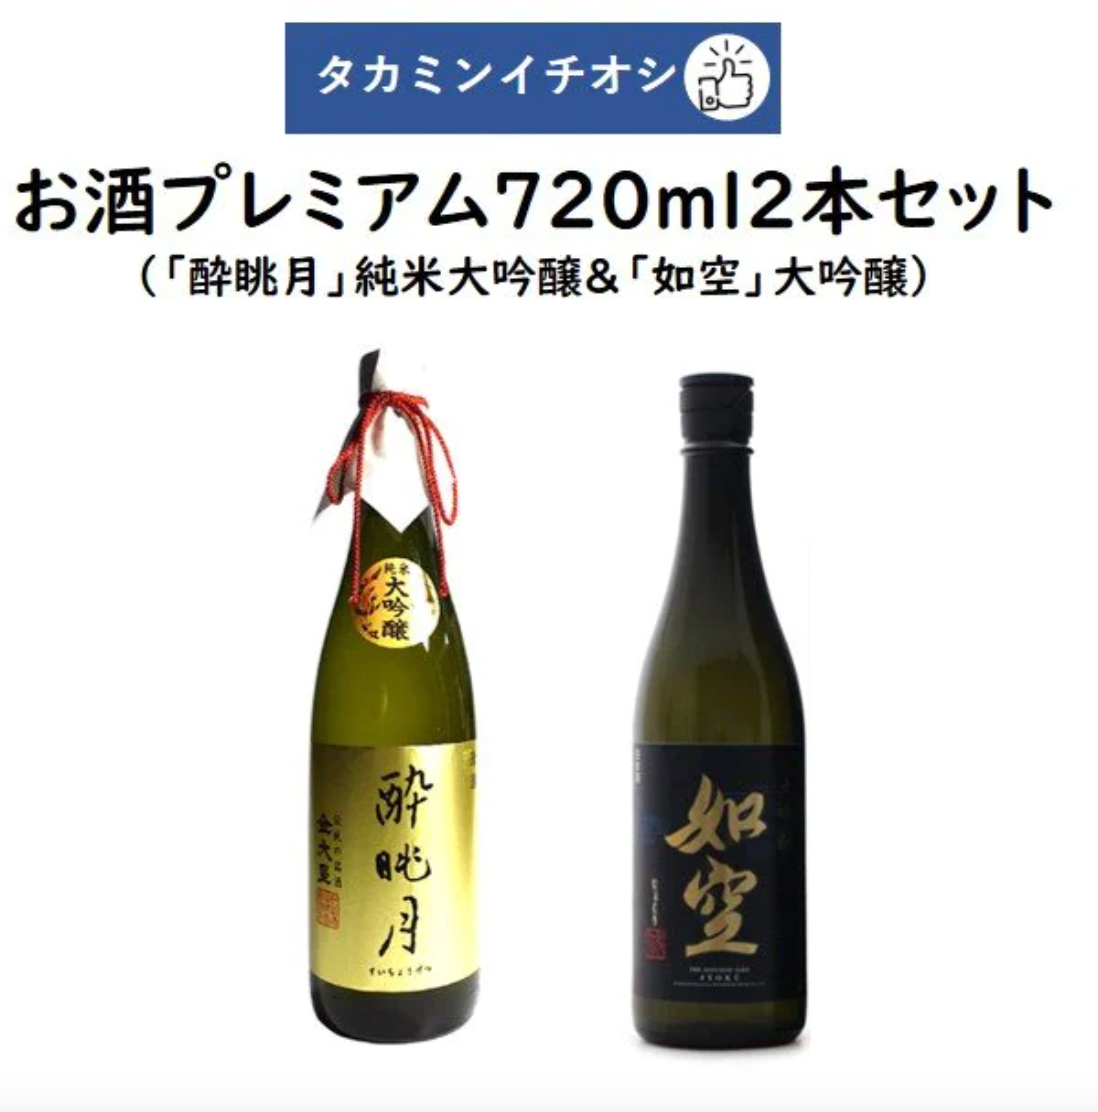 Takamin Recommended Sake Premium 720ml 2 bottles set "Suikeitsuki" Junmai Daiginjo Maruyama Sake Brewery & "Joku" Daiginjo Hachinohe Sake